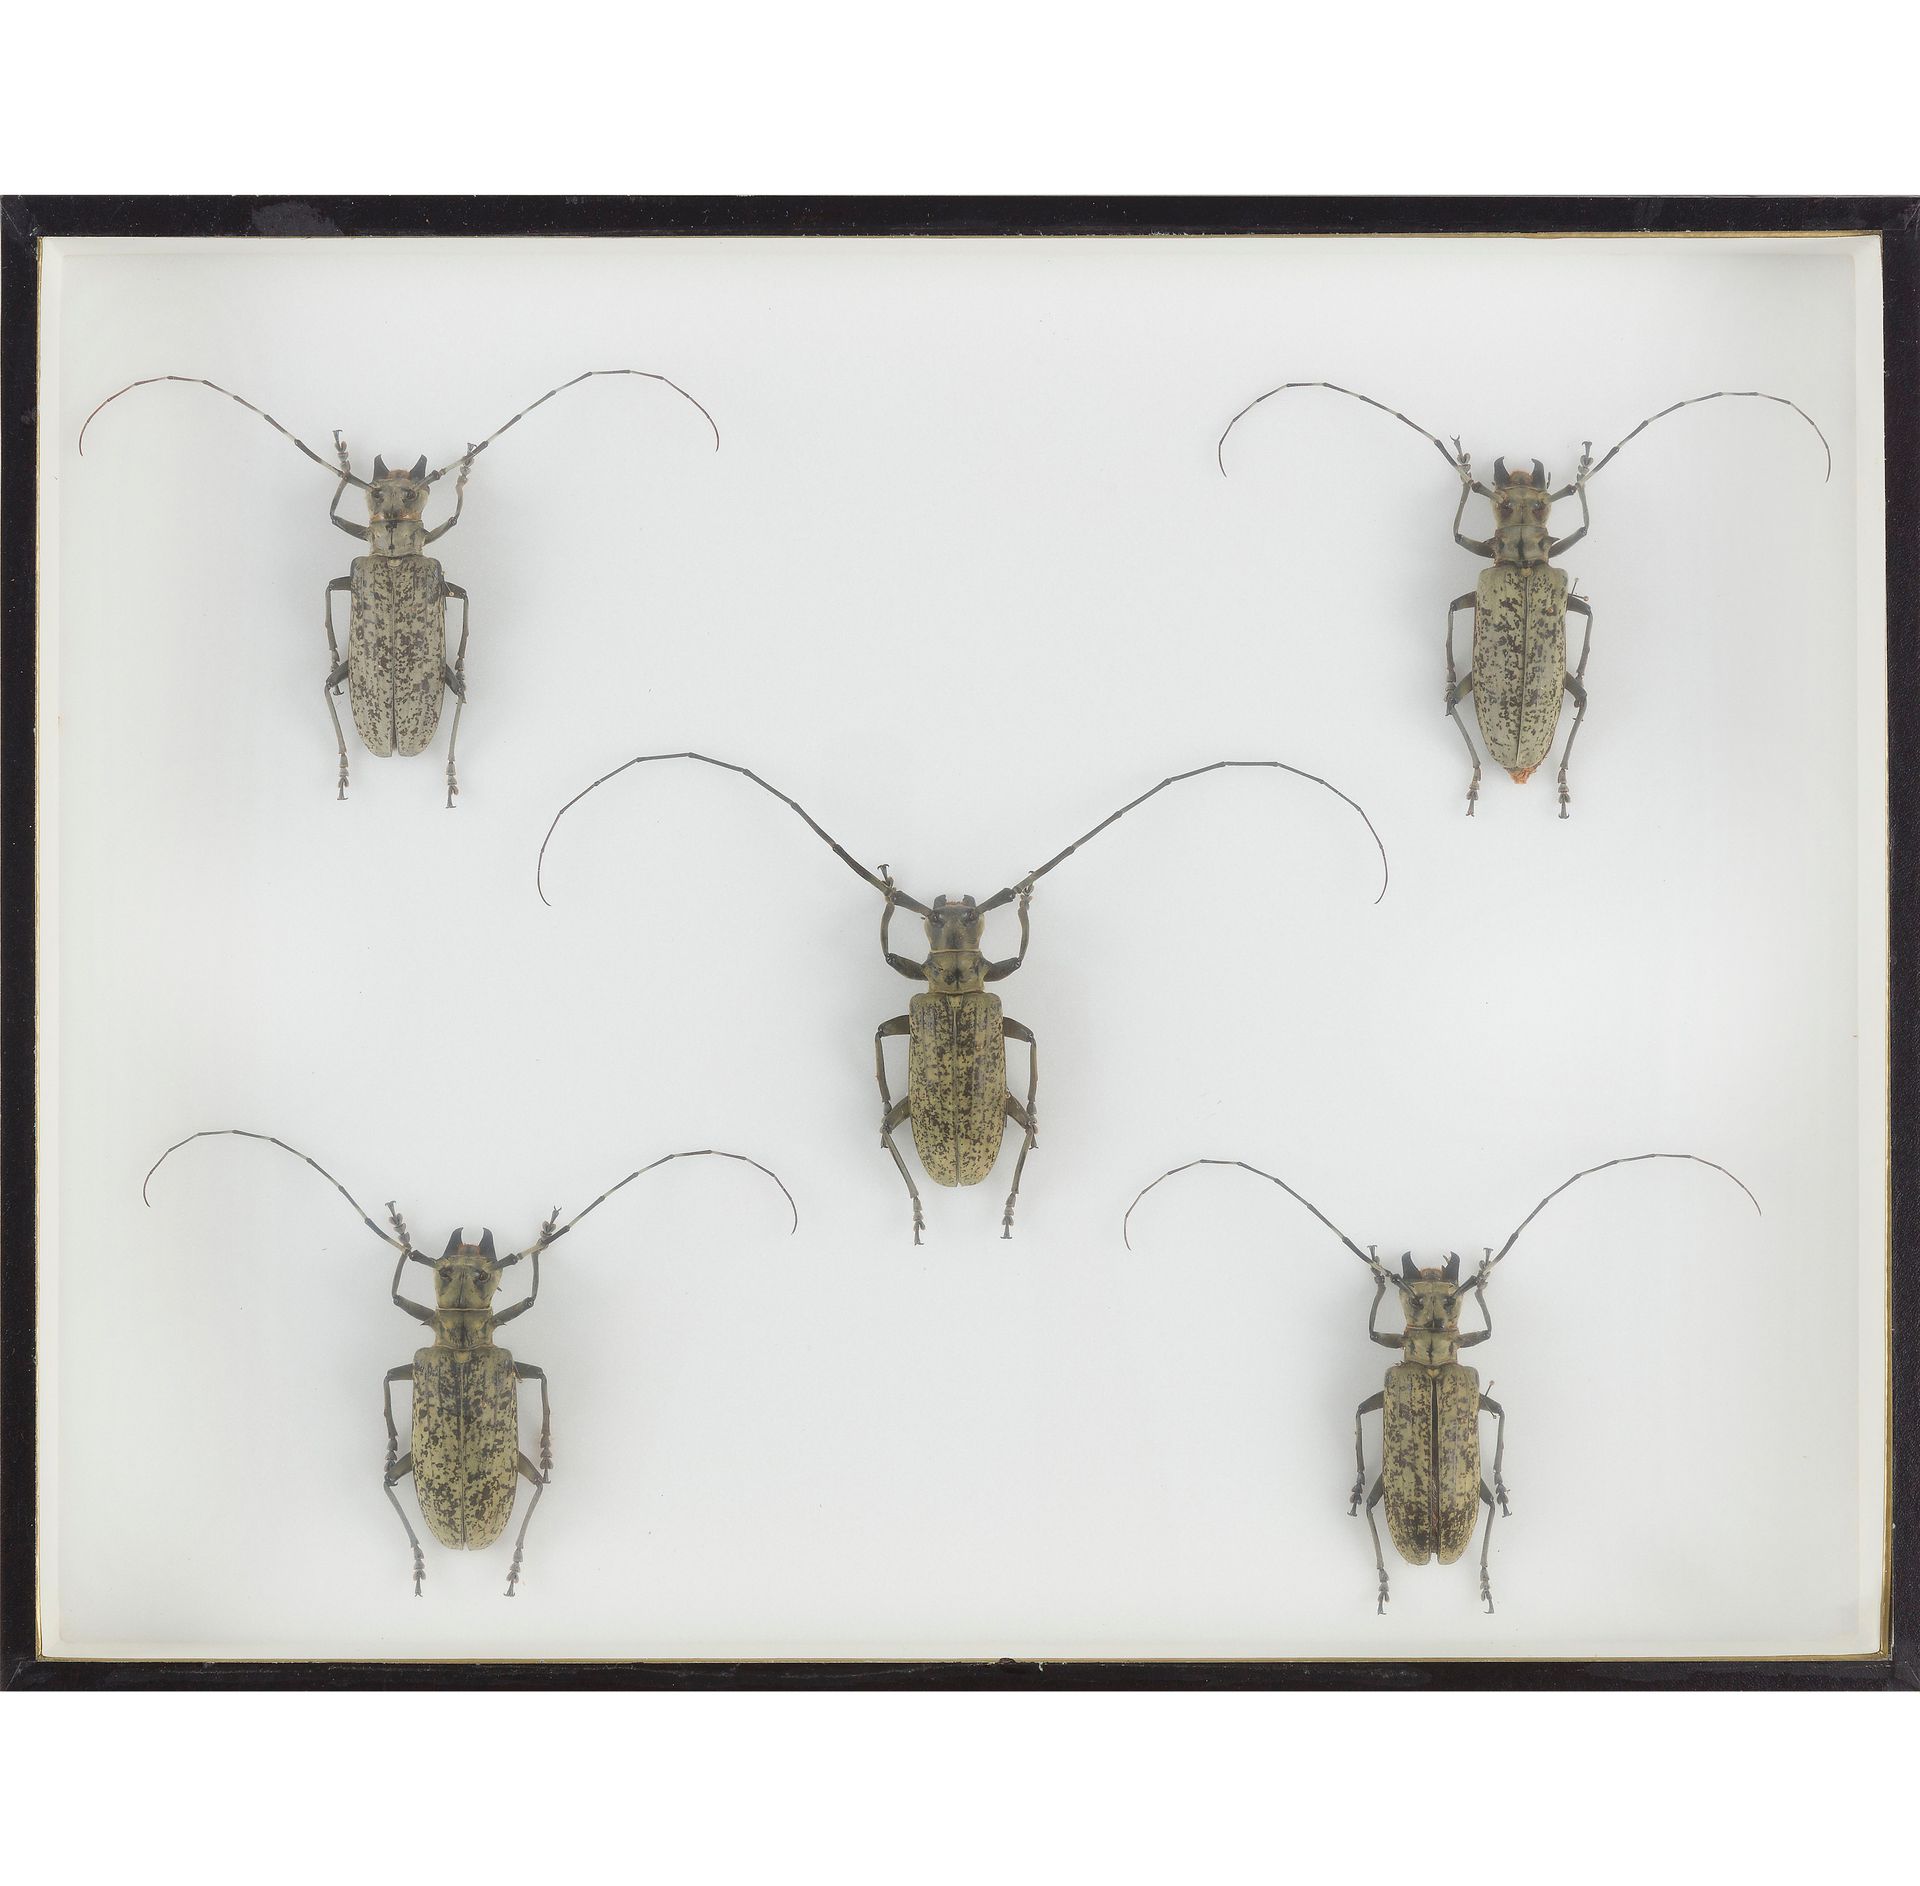 Null Un set di due scatole per insetti composto da :

Phasmidae (6 maschi, 5 fem&hellip;